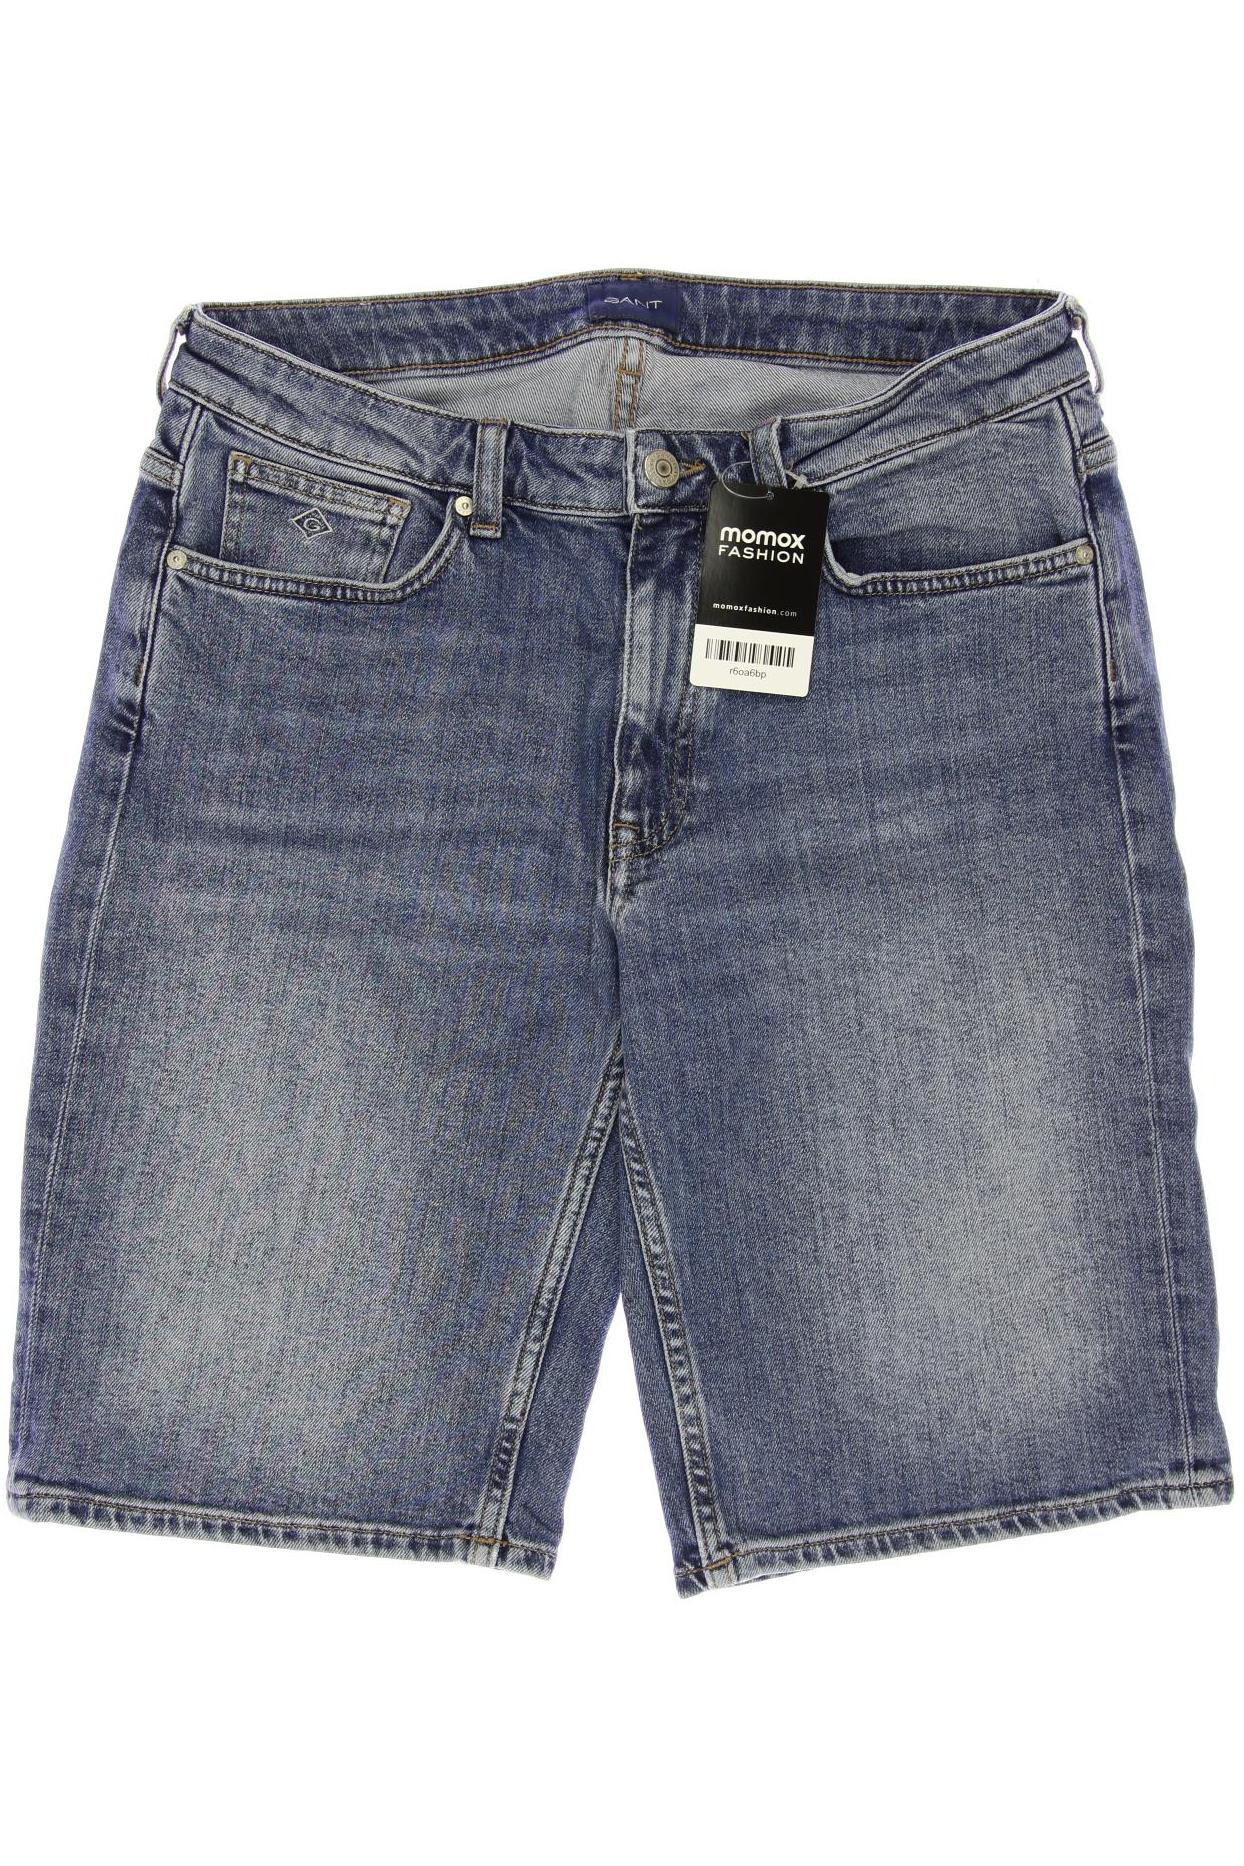 Gant Damen Shorts, blau, Gr. 40 von Gant